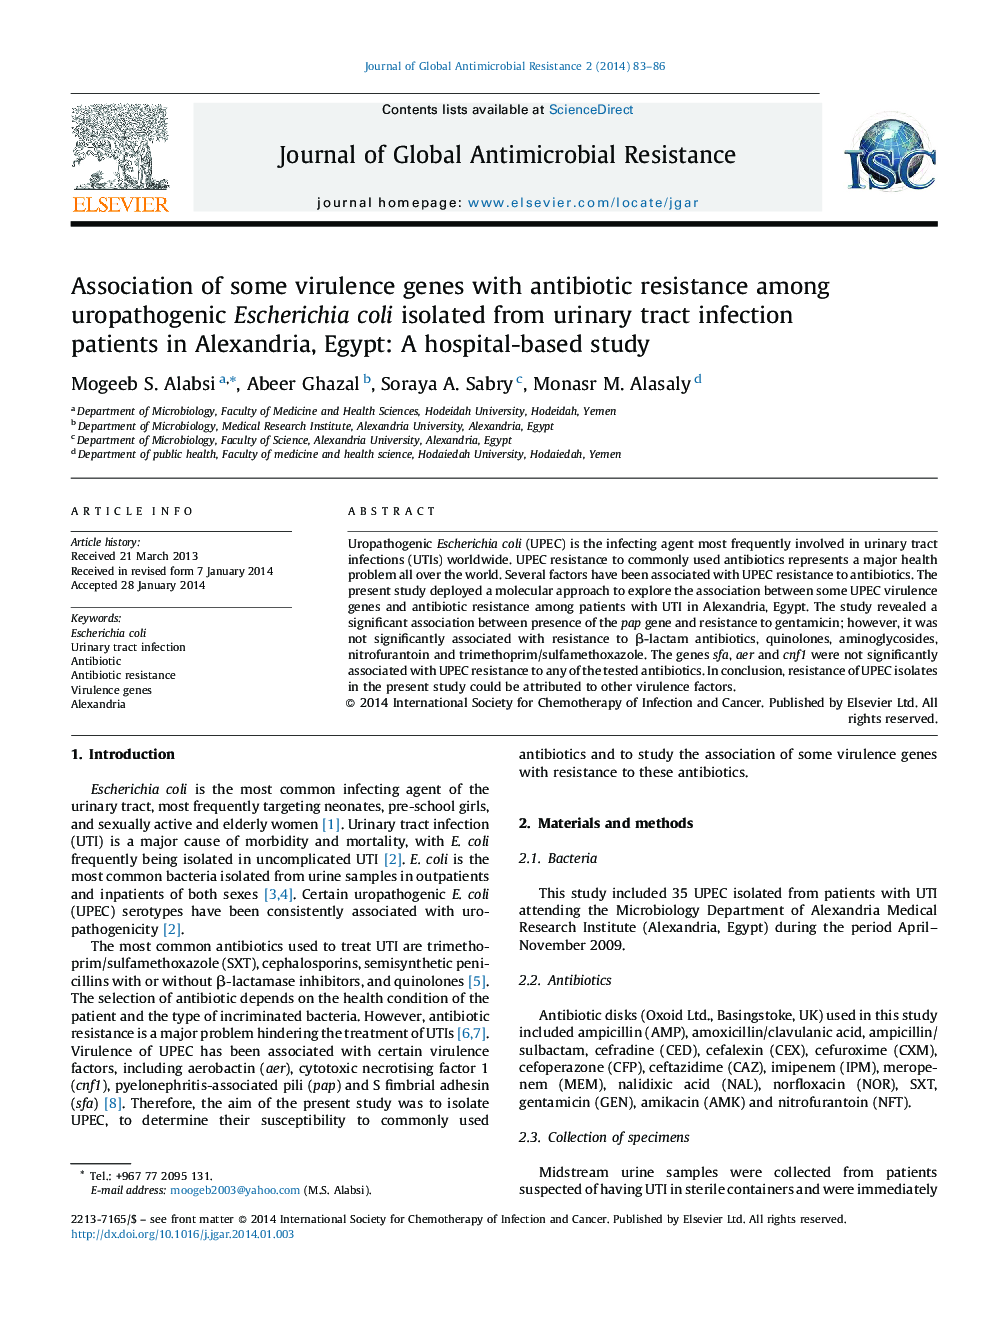 ارتباط برخی از ژن های ویروسی با مقاومت آنتی بیوتیک اشرشیا کولی اوروپاتوژنیک جدا شده از بیماران مبتلا به عفونت ادراری در اسکندریه، مصر: یک مطالعه مبتنی بر بیمارستان 